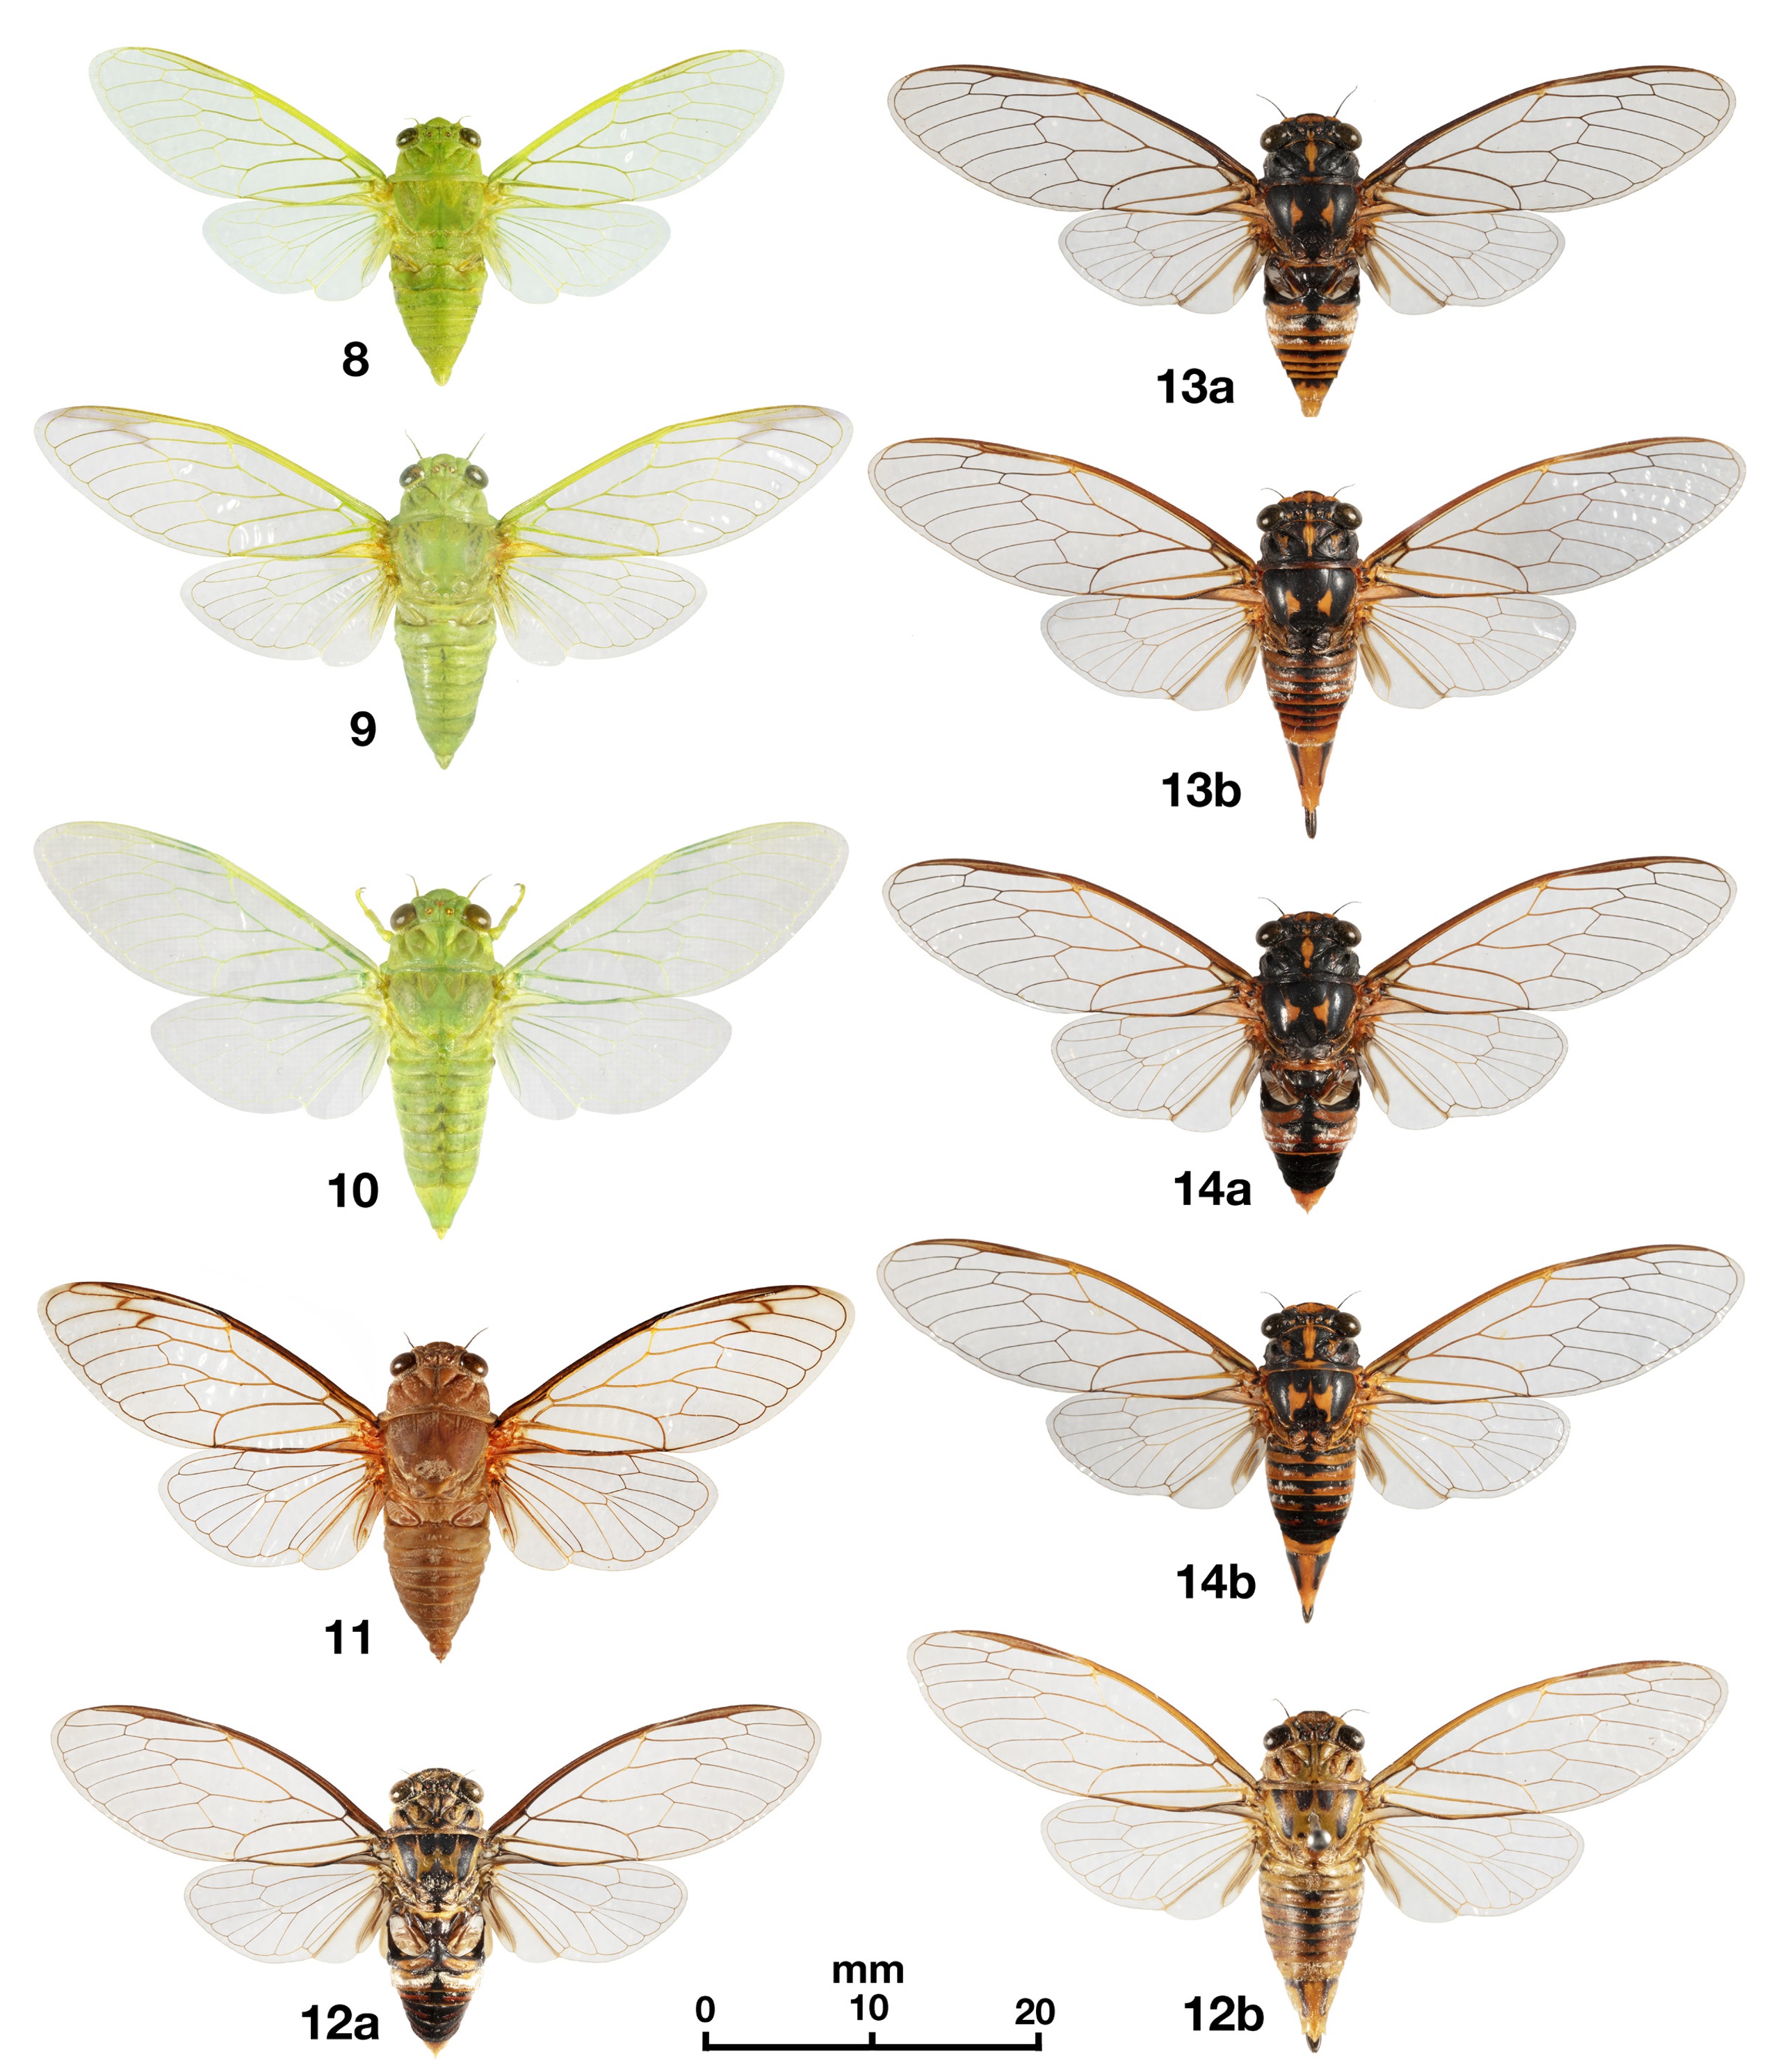 Species New to Science: [Entomology • 2022] Calipsalta brunnea